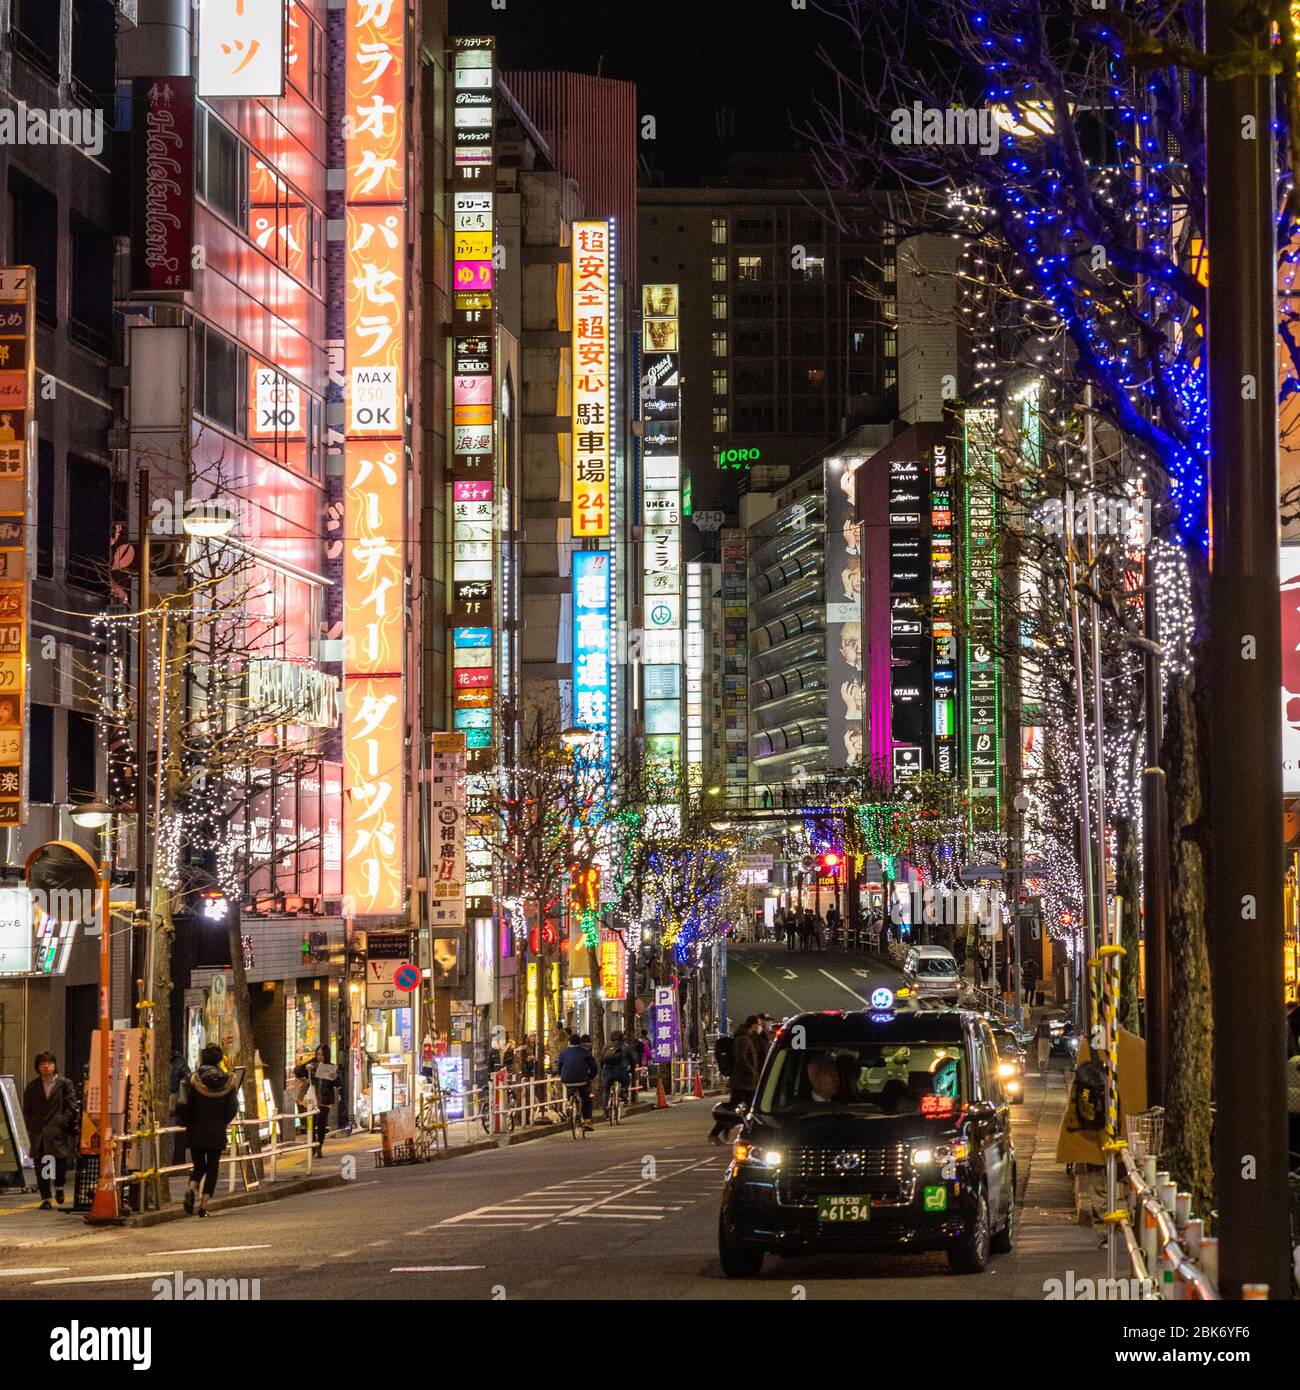 Shinjuku Streets at Night, Tokyo, Japan Stock Photo